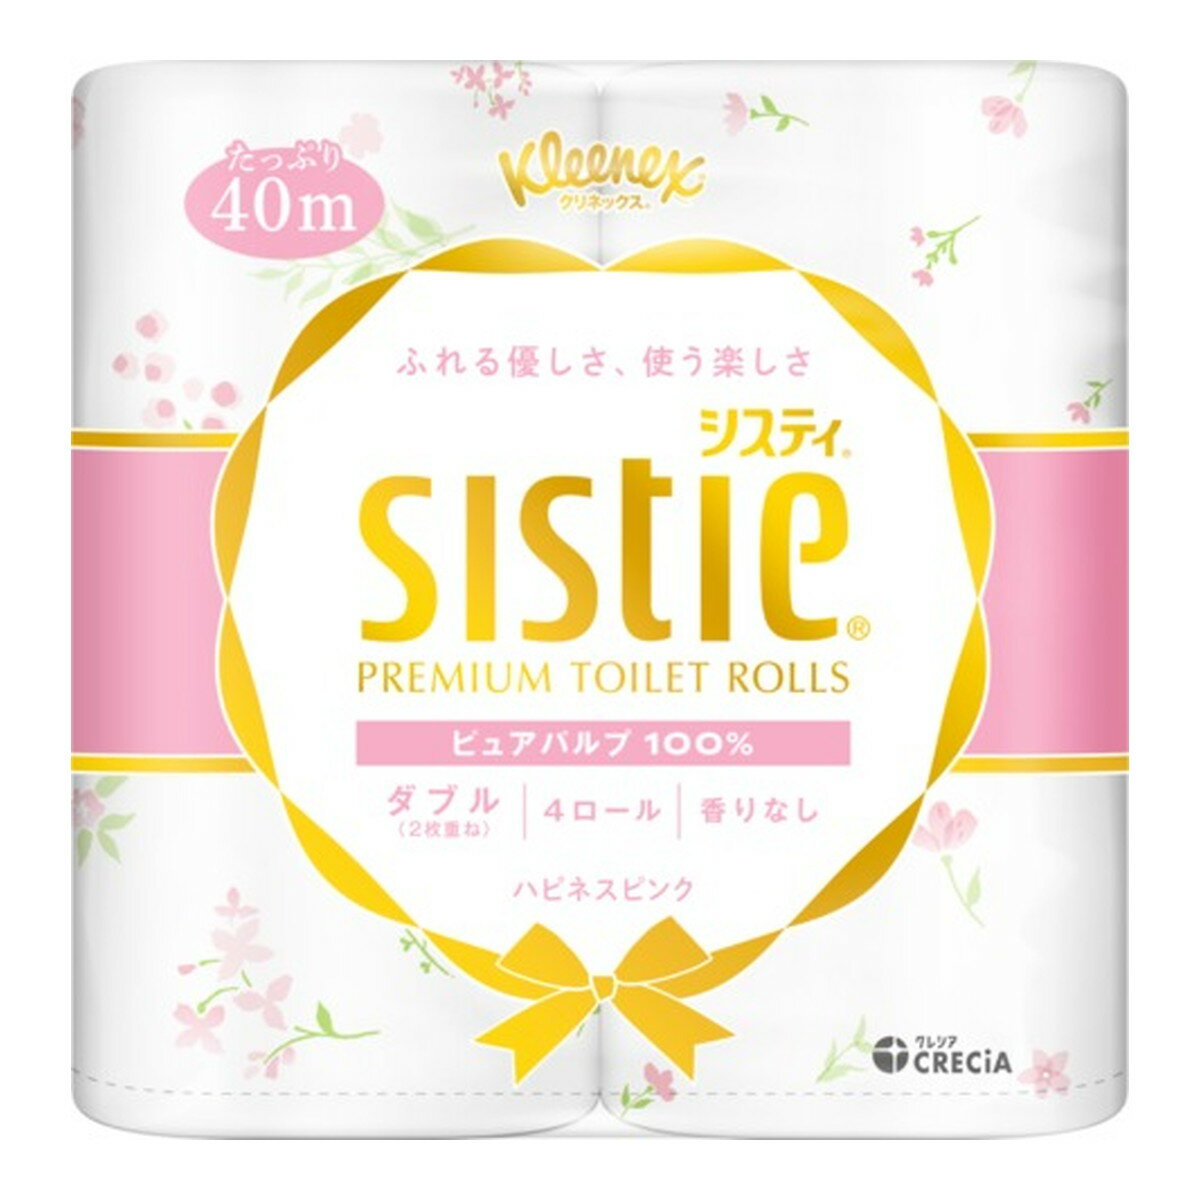 日本製紙クレシア クリネックス システィ 4ロール ダブル ハピネスピンク トイレットペーパー